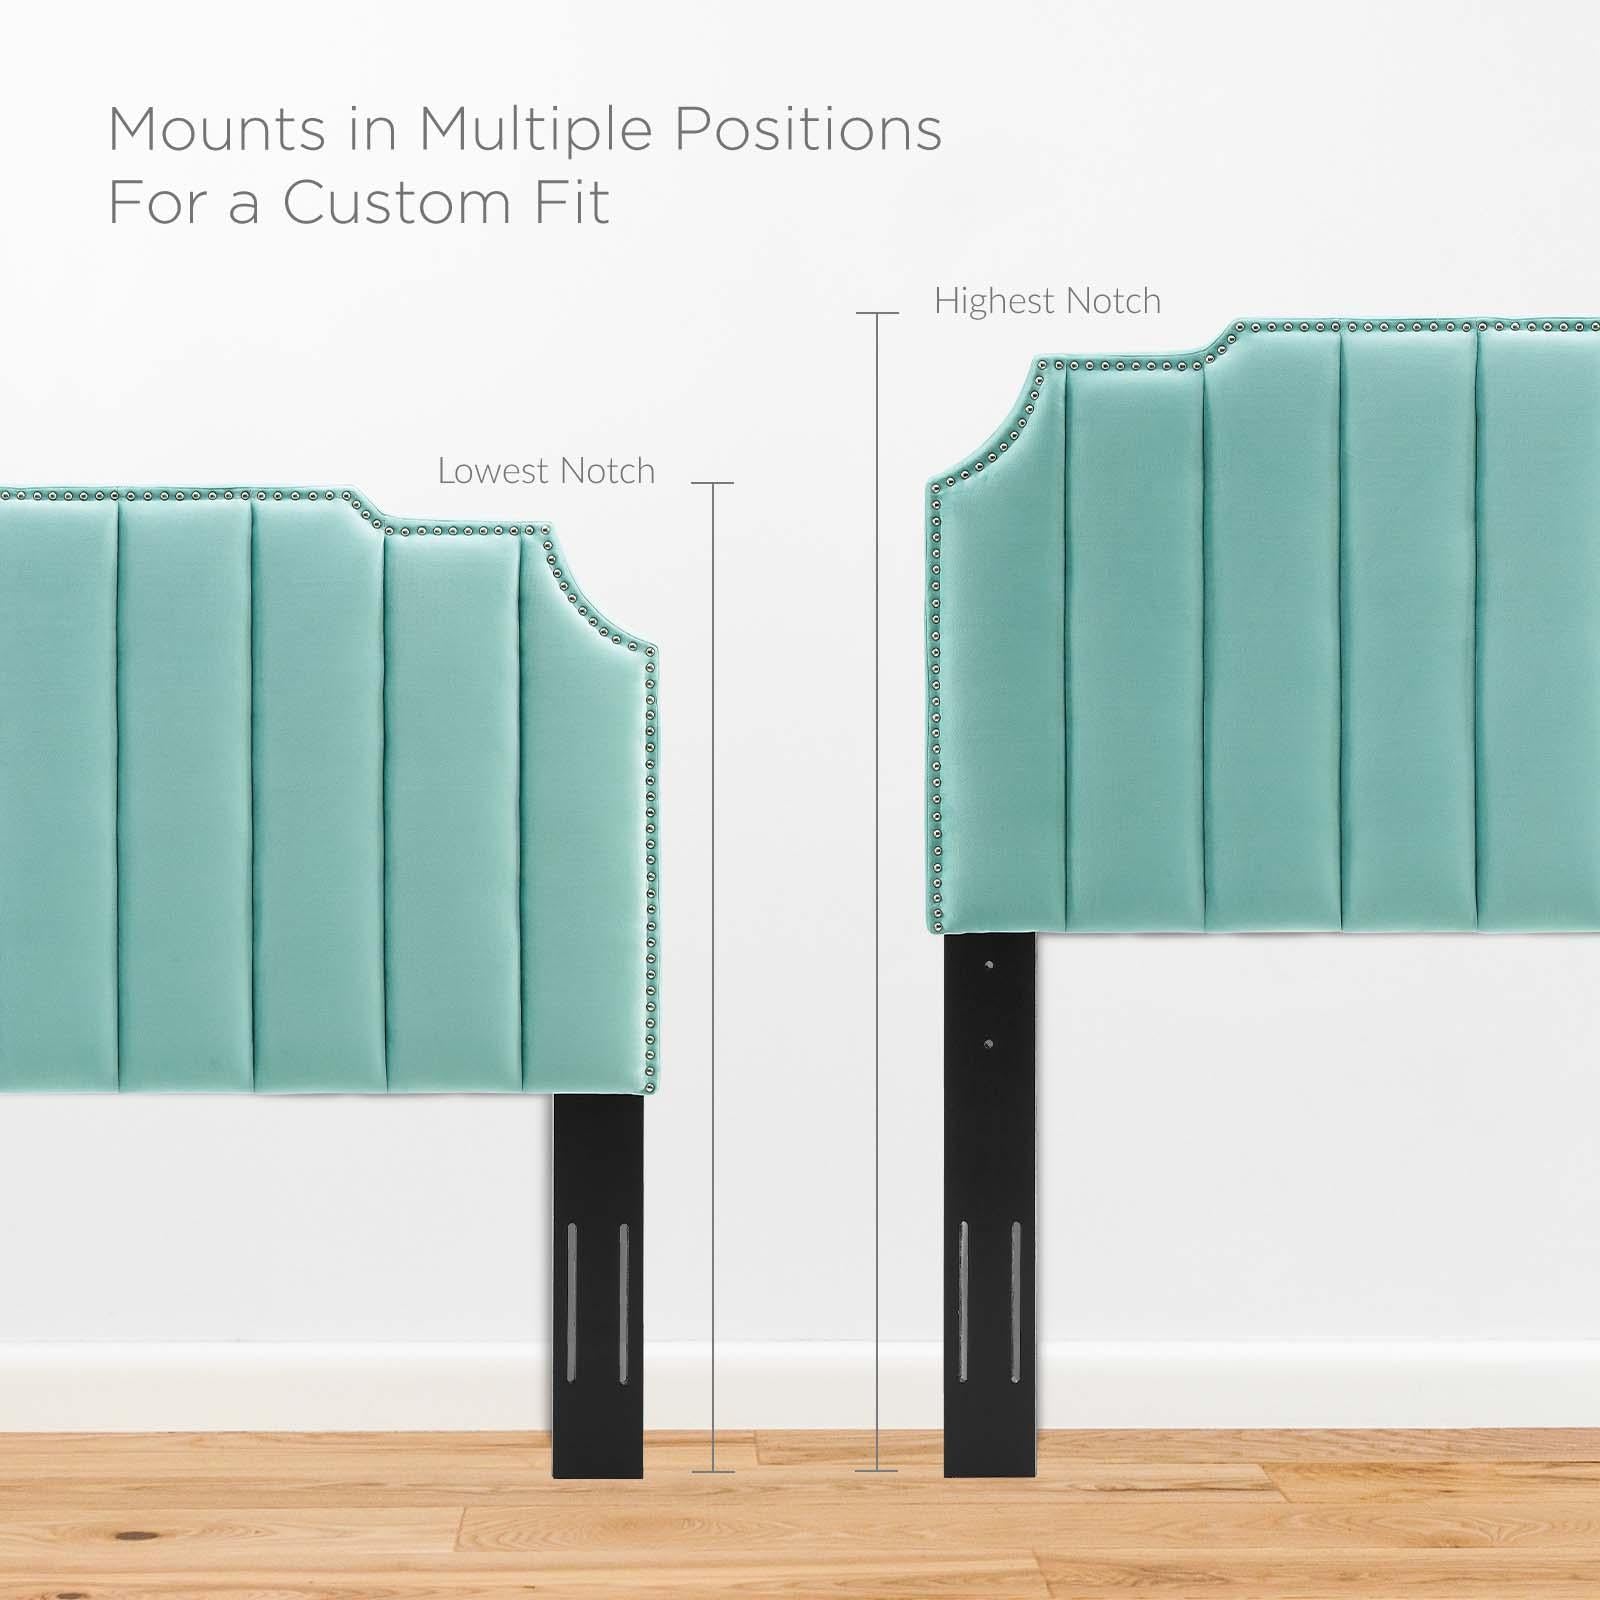 Modway Furniture Modern Colette Twin Performance Velvet Platform Bed - MOD-6884